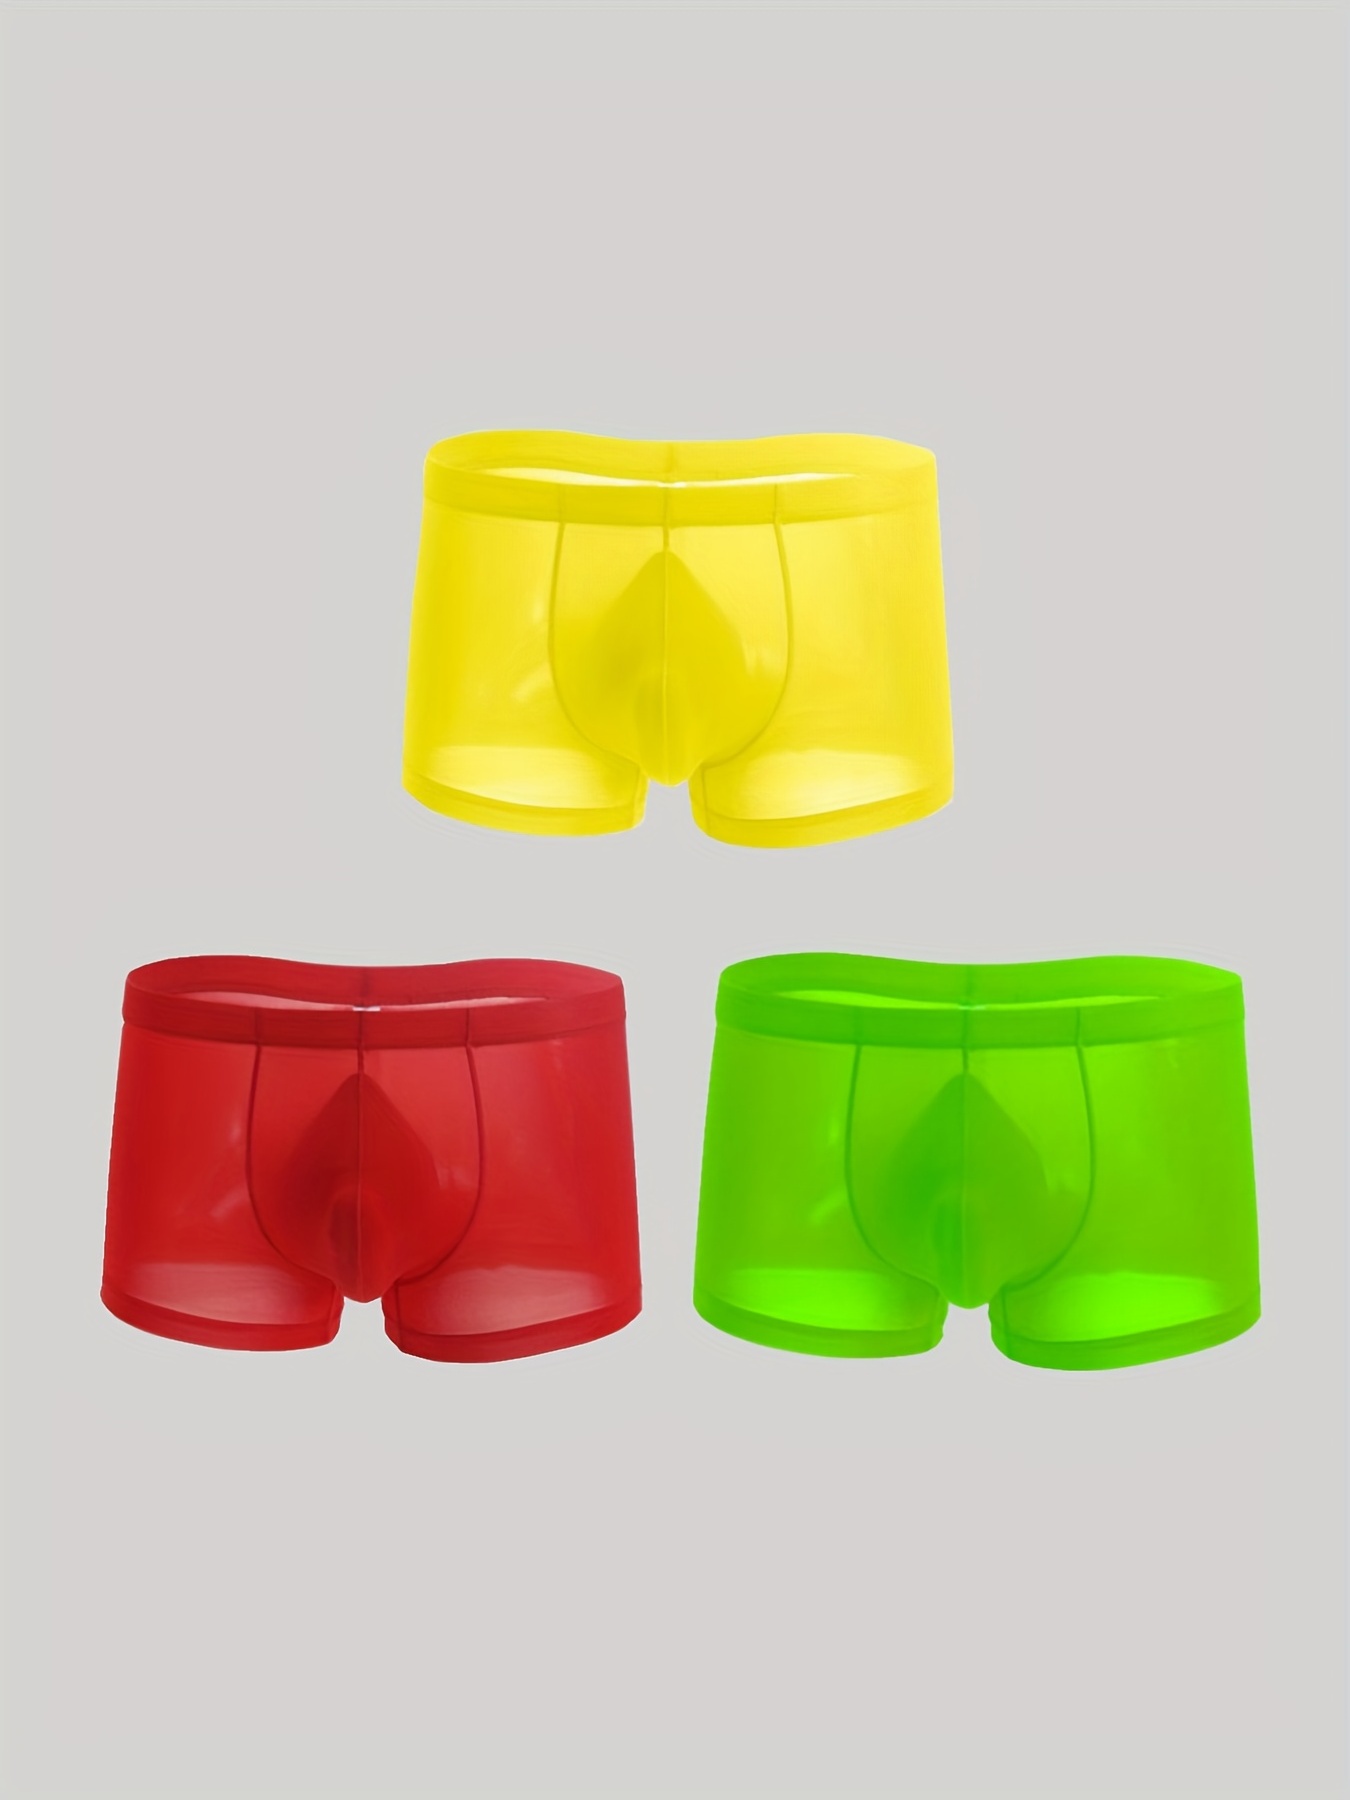 Mens Underwear Briefs Men'S Summer Thin Transparent Ice Silk Boxers  Breathable Men Waist Non-Trace Pants Underwear